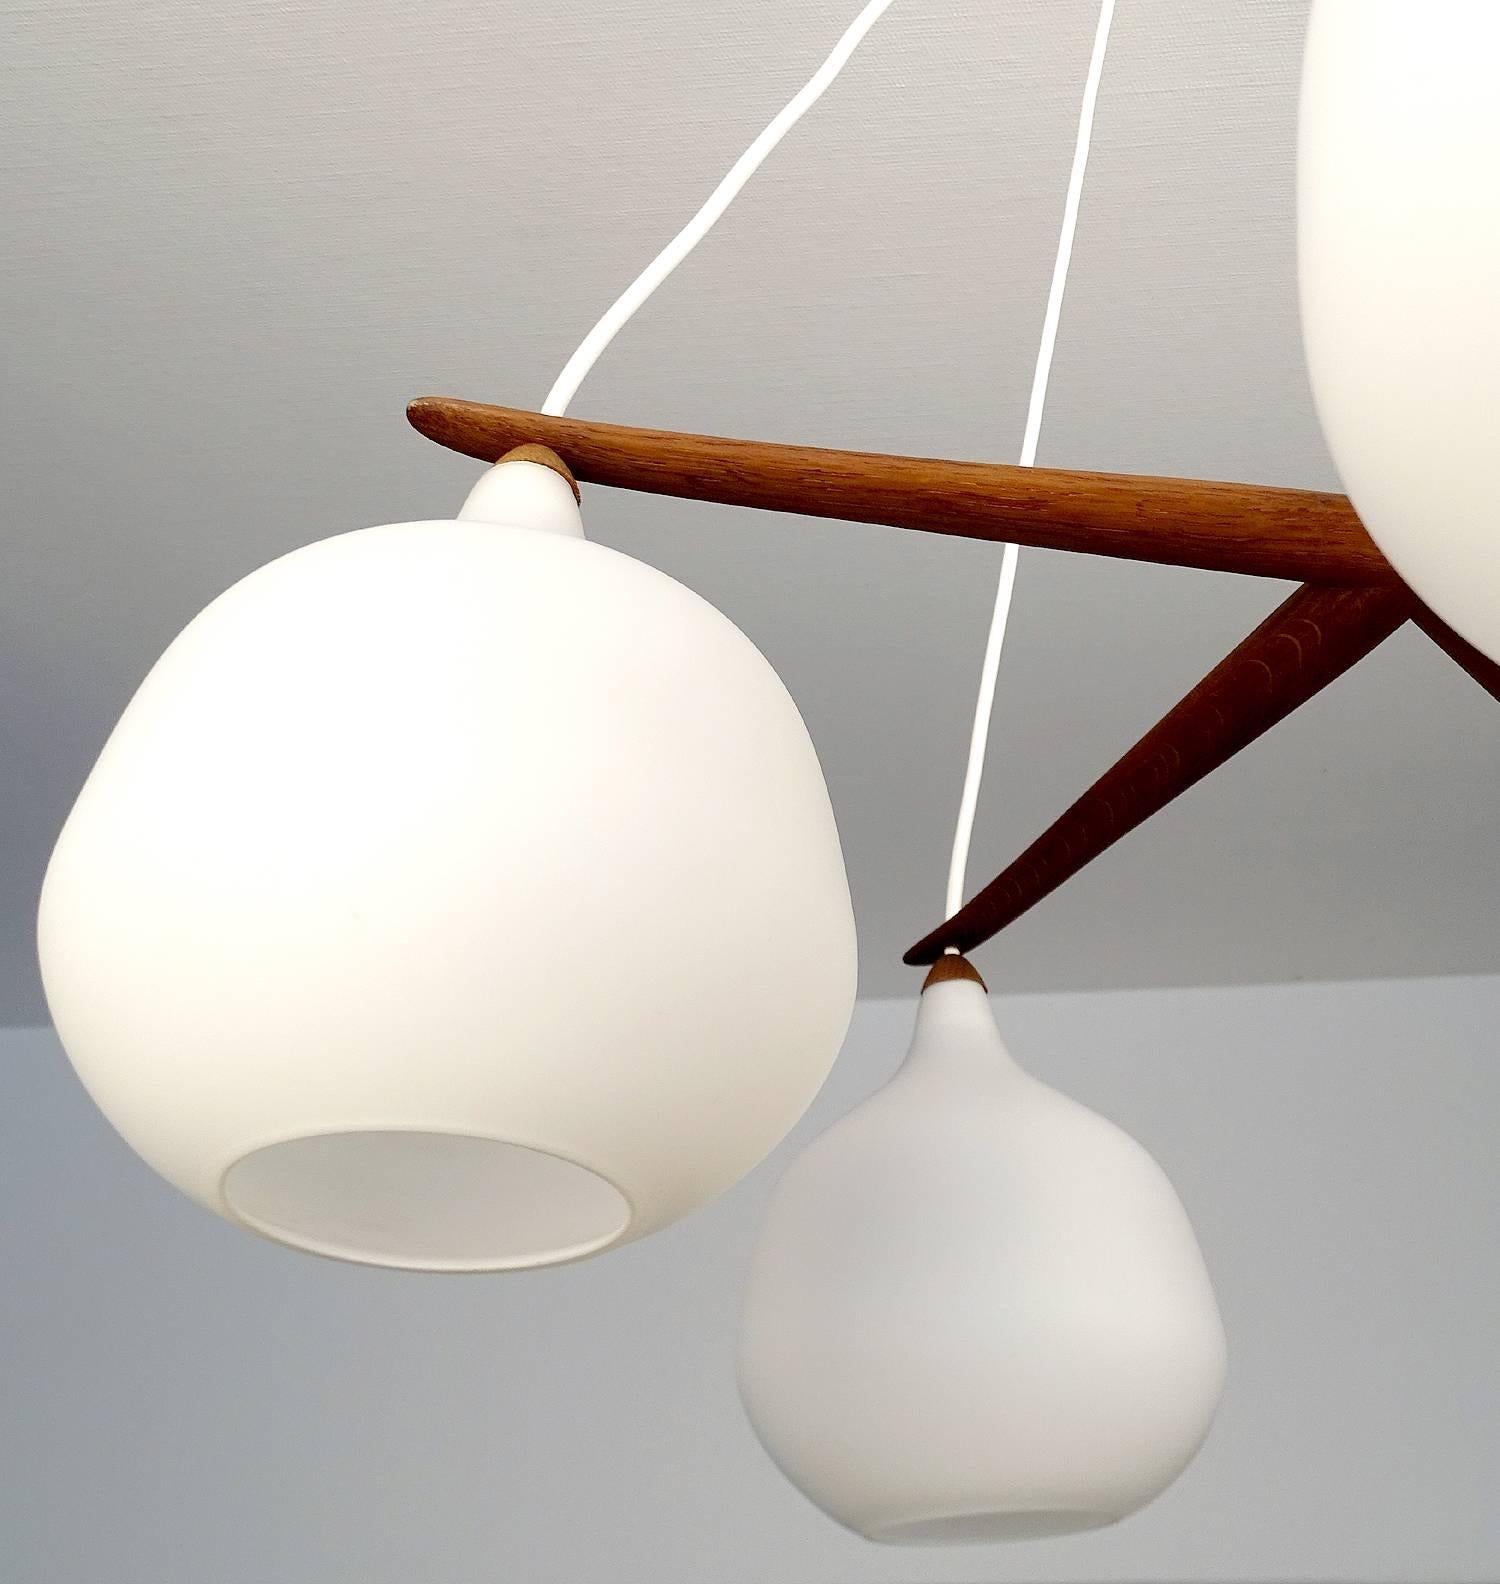  Luxus Chandelier by Uno & Osten Kristiansson Glass Globes Lamp Danish Modern 2